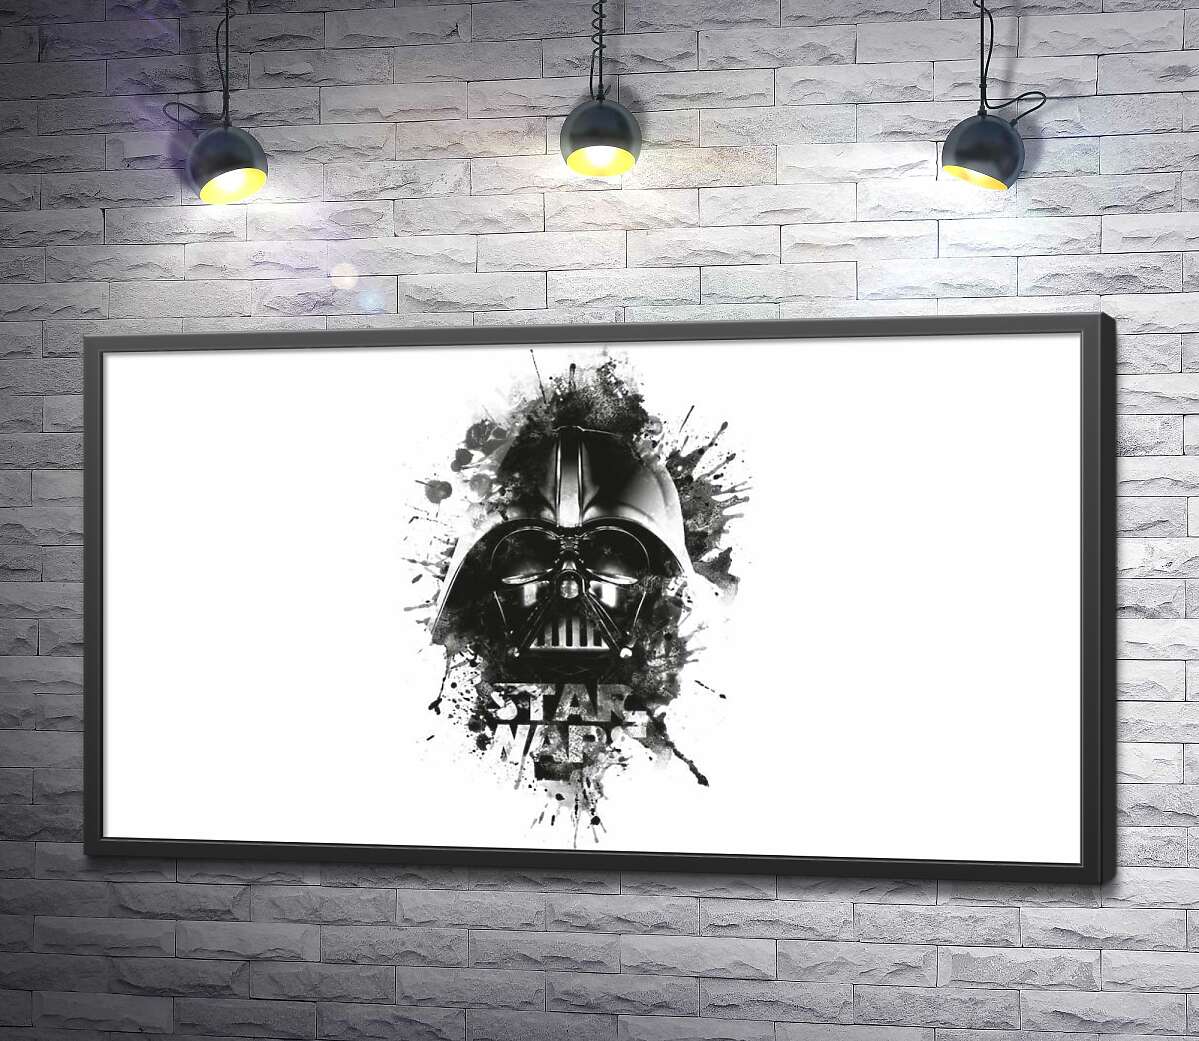 постер Дарт Вейдер (Darth Vader) на постере к фильму "Звездные войны" (Star Wars)